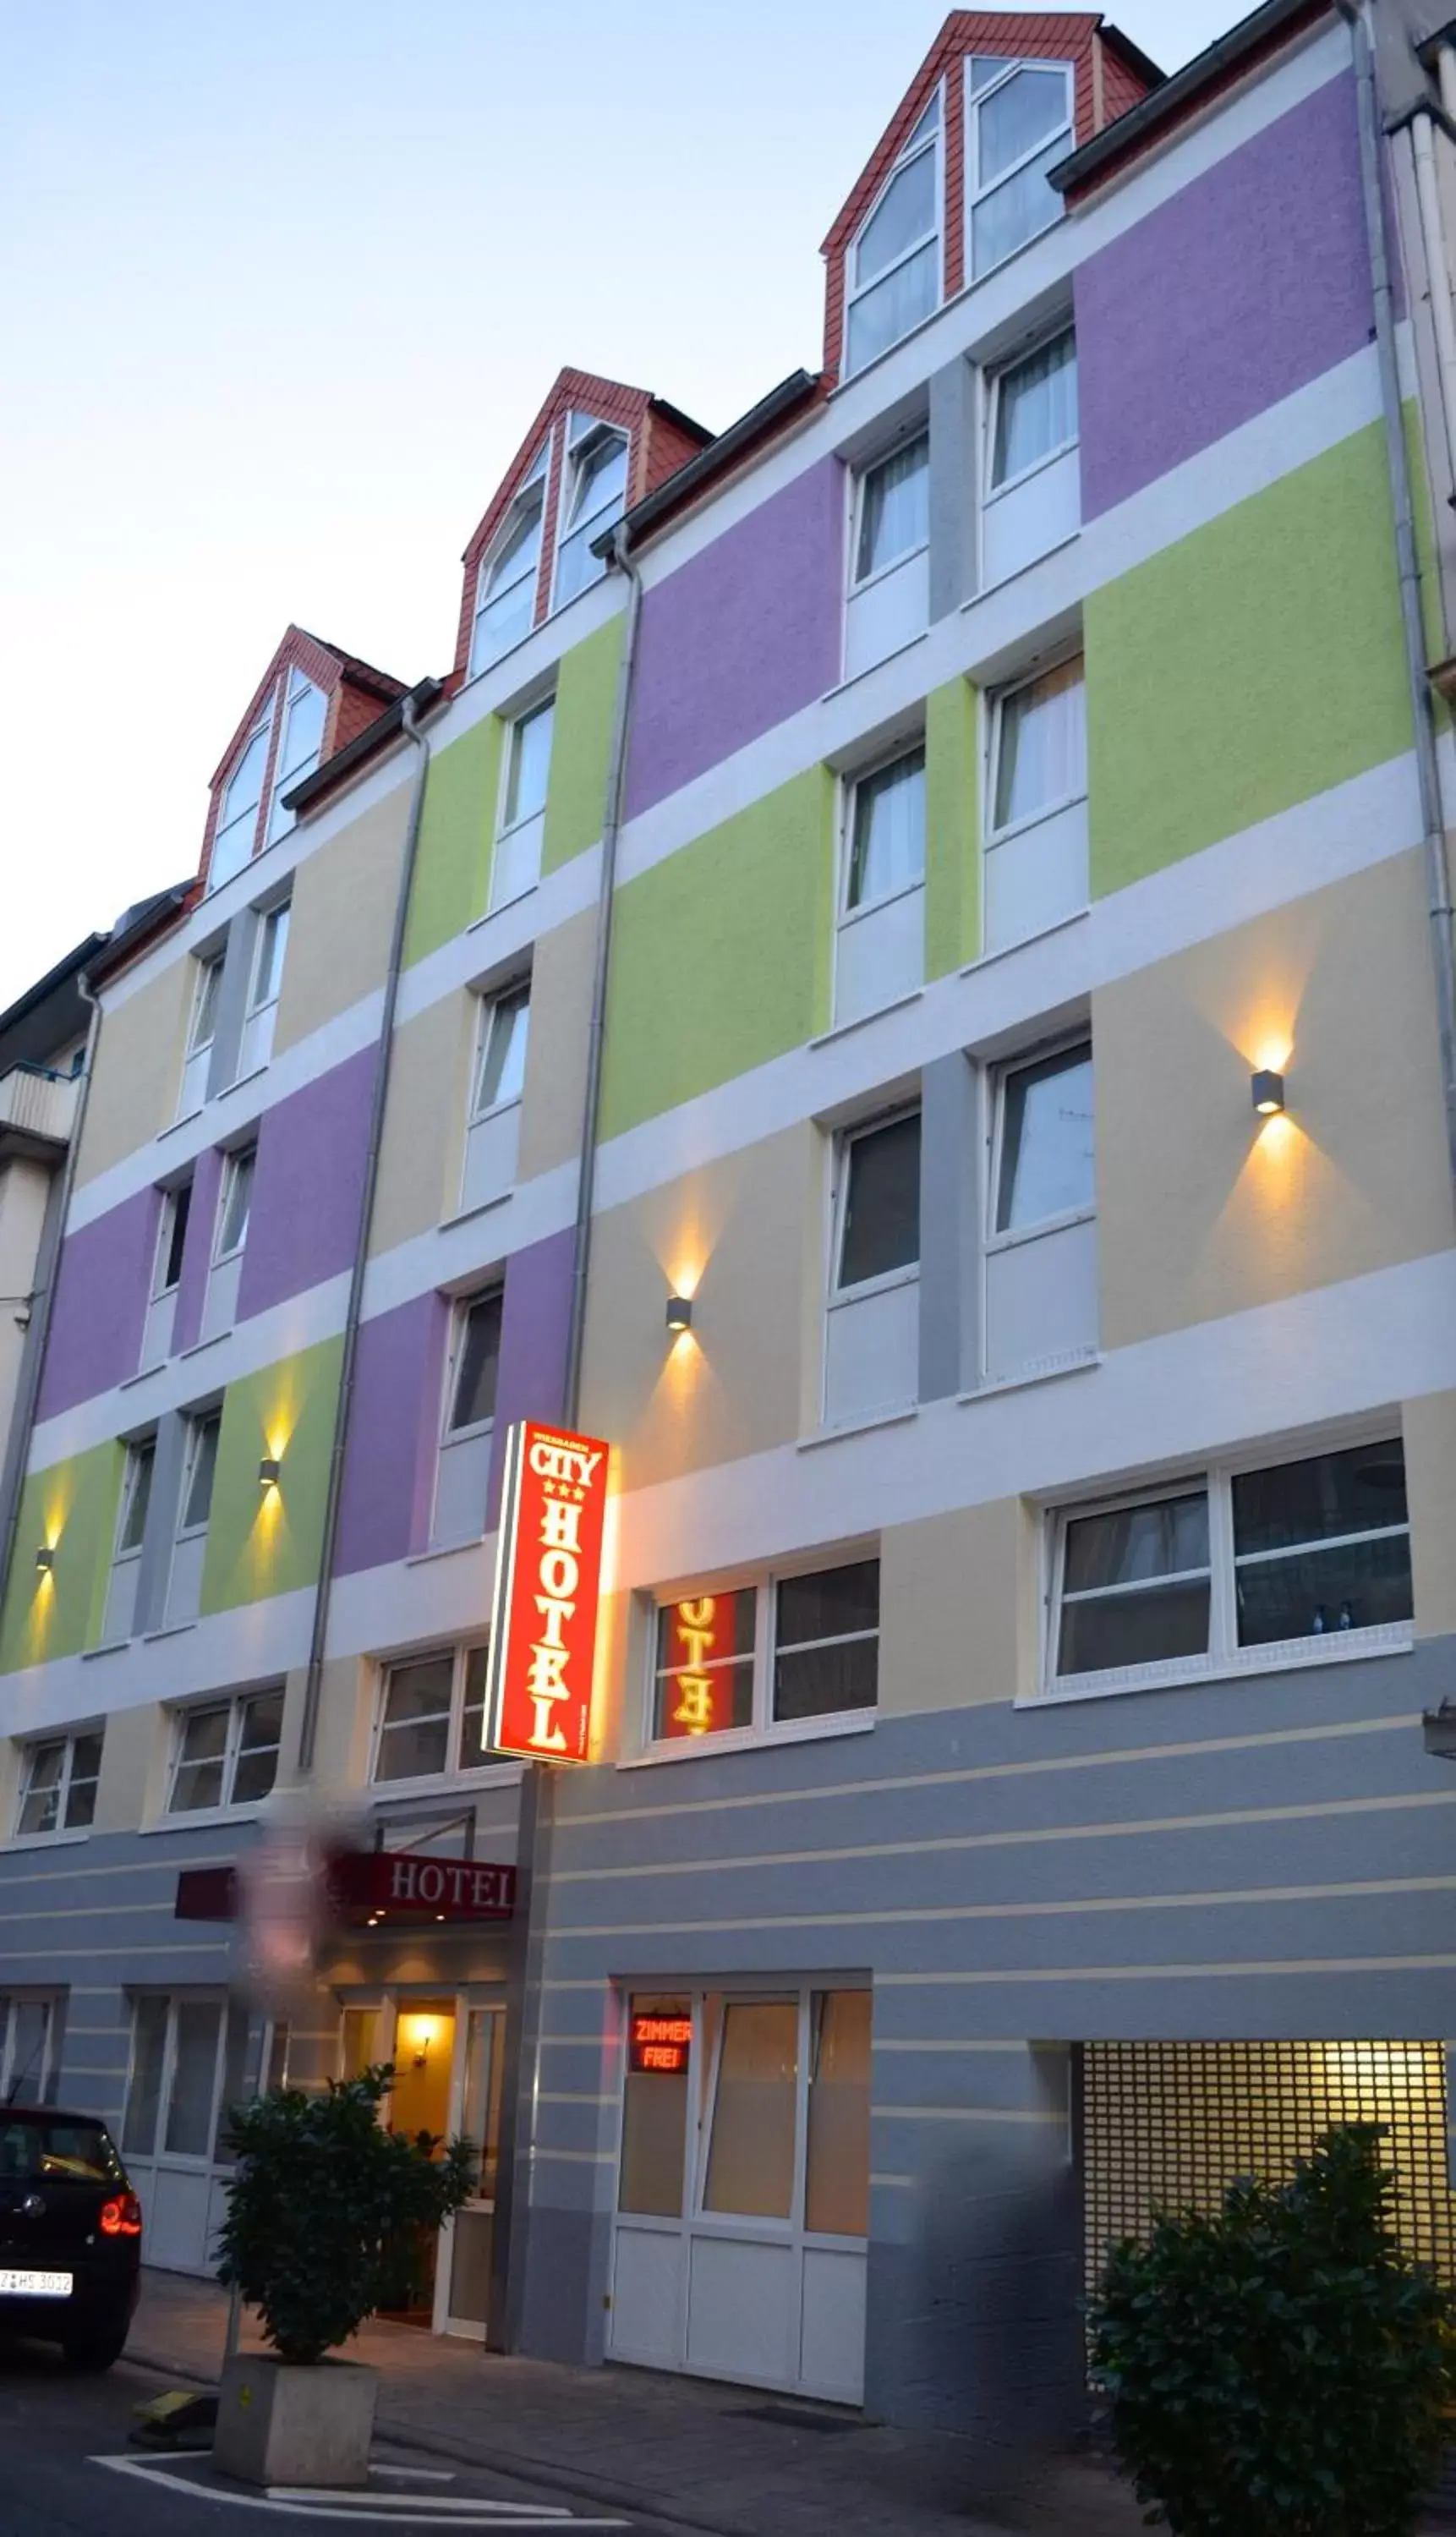 Facade/entrance, Property Building in City Hotel Wiesbaden